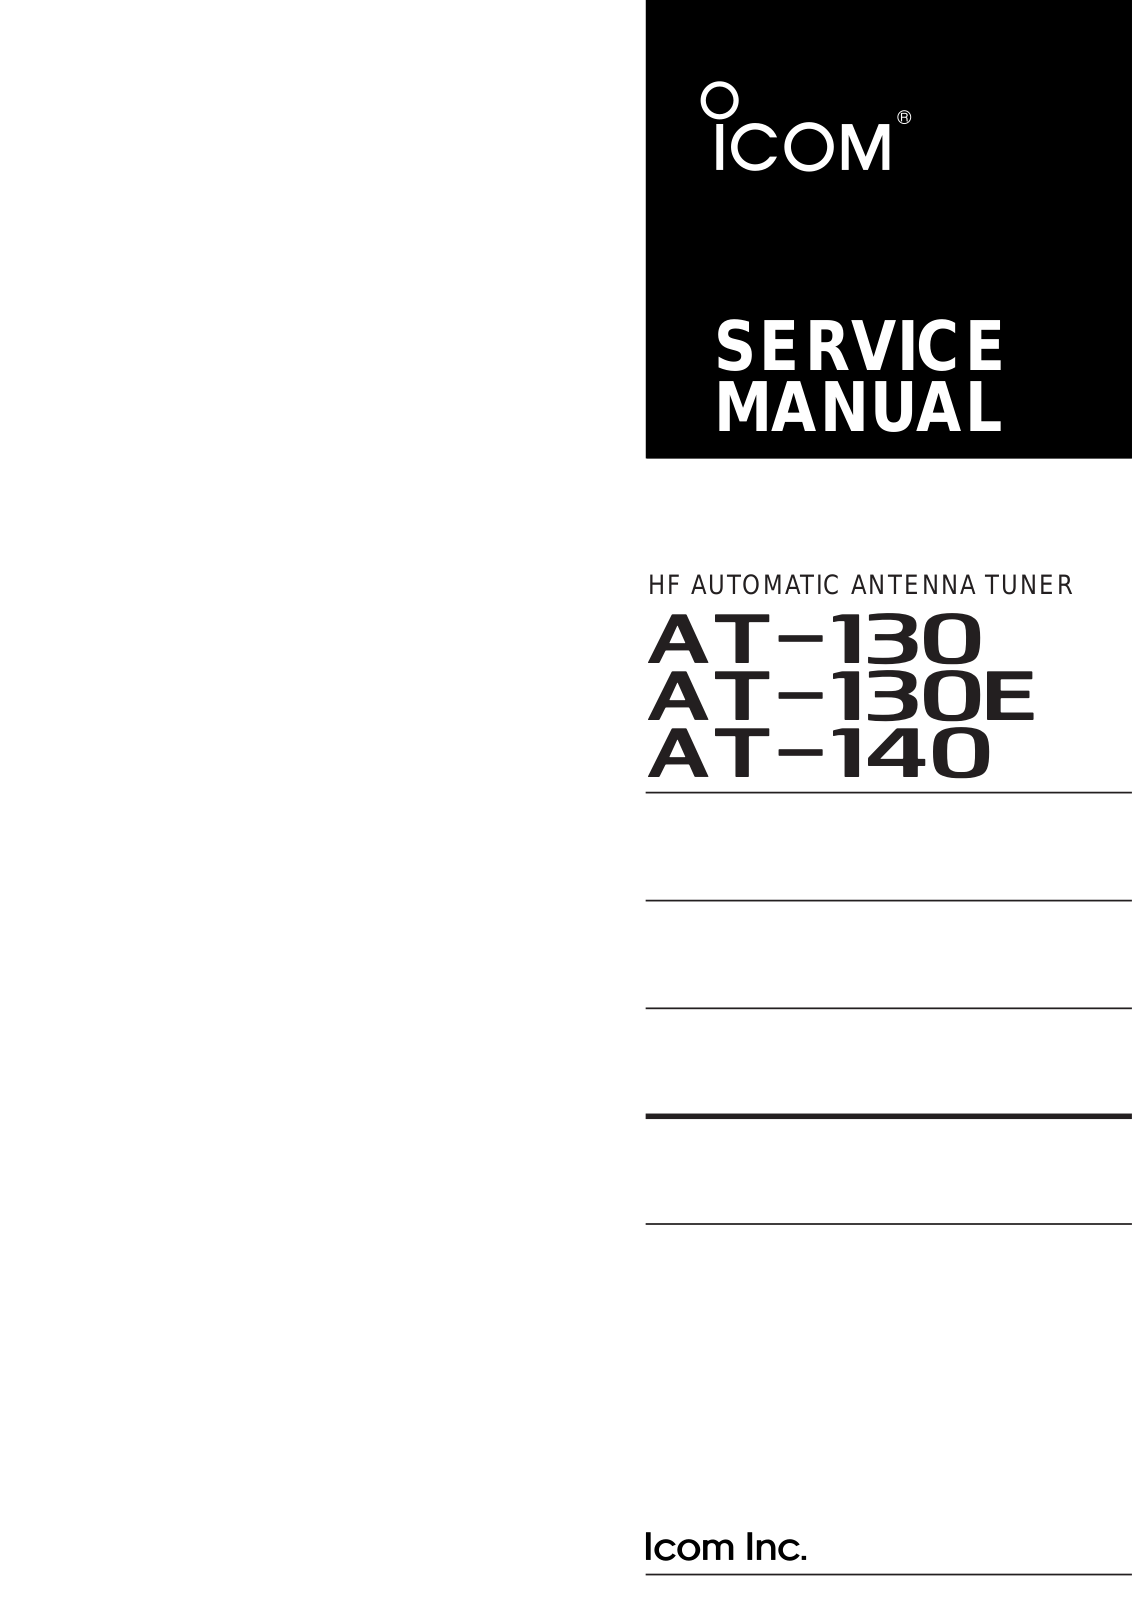 Icom AT-140, AT-130E, AT-130 Service Manual